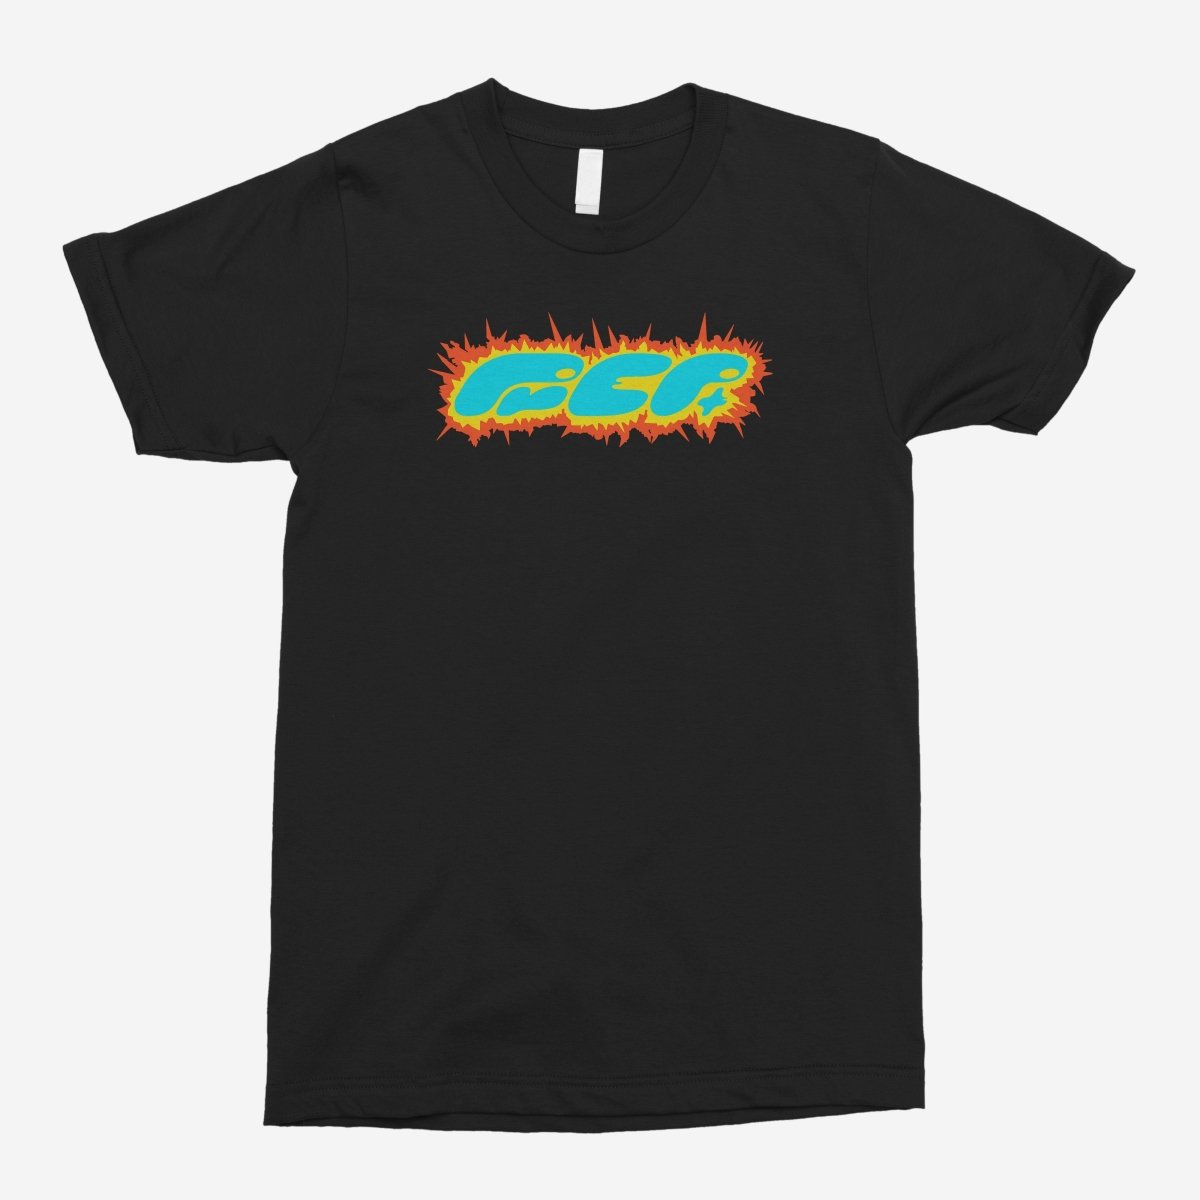 Frank Ocean - Prep (Black) Unisex T-Shirt